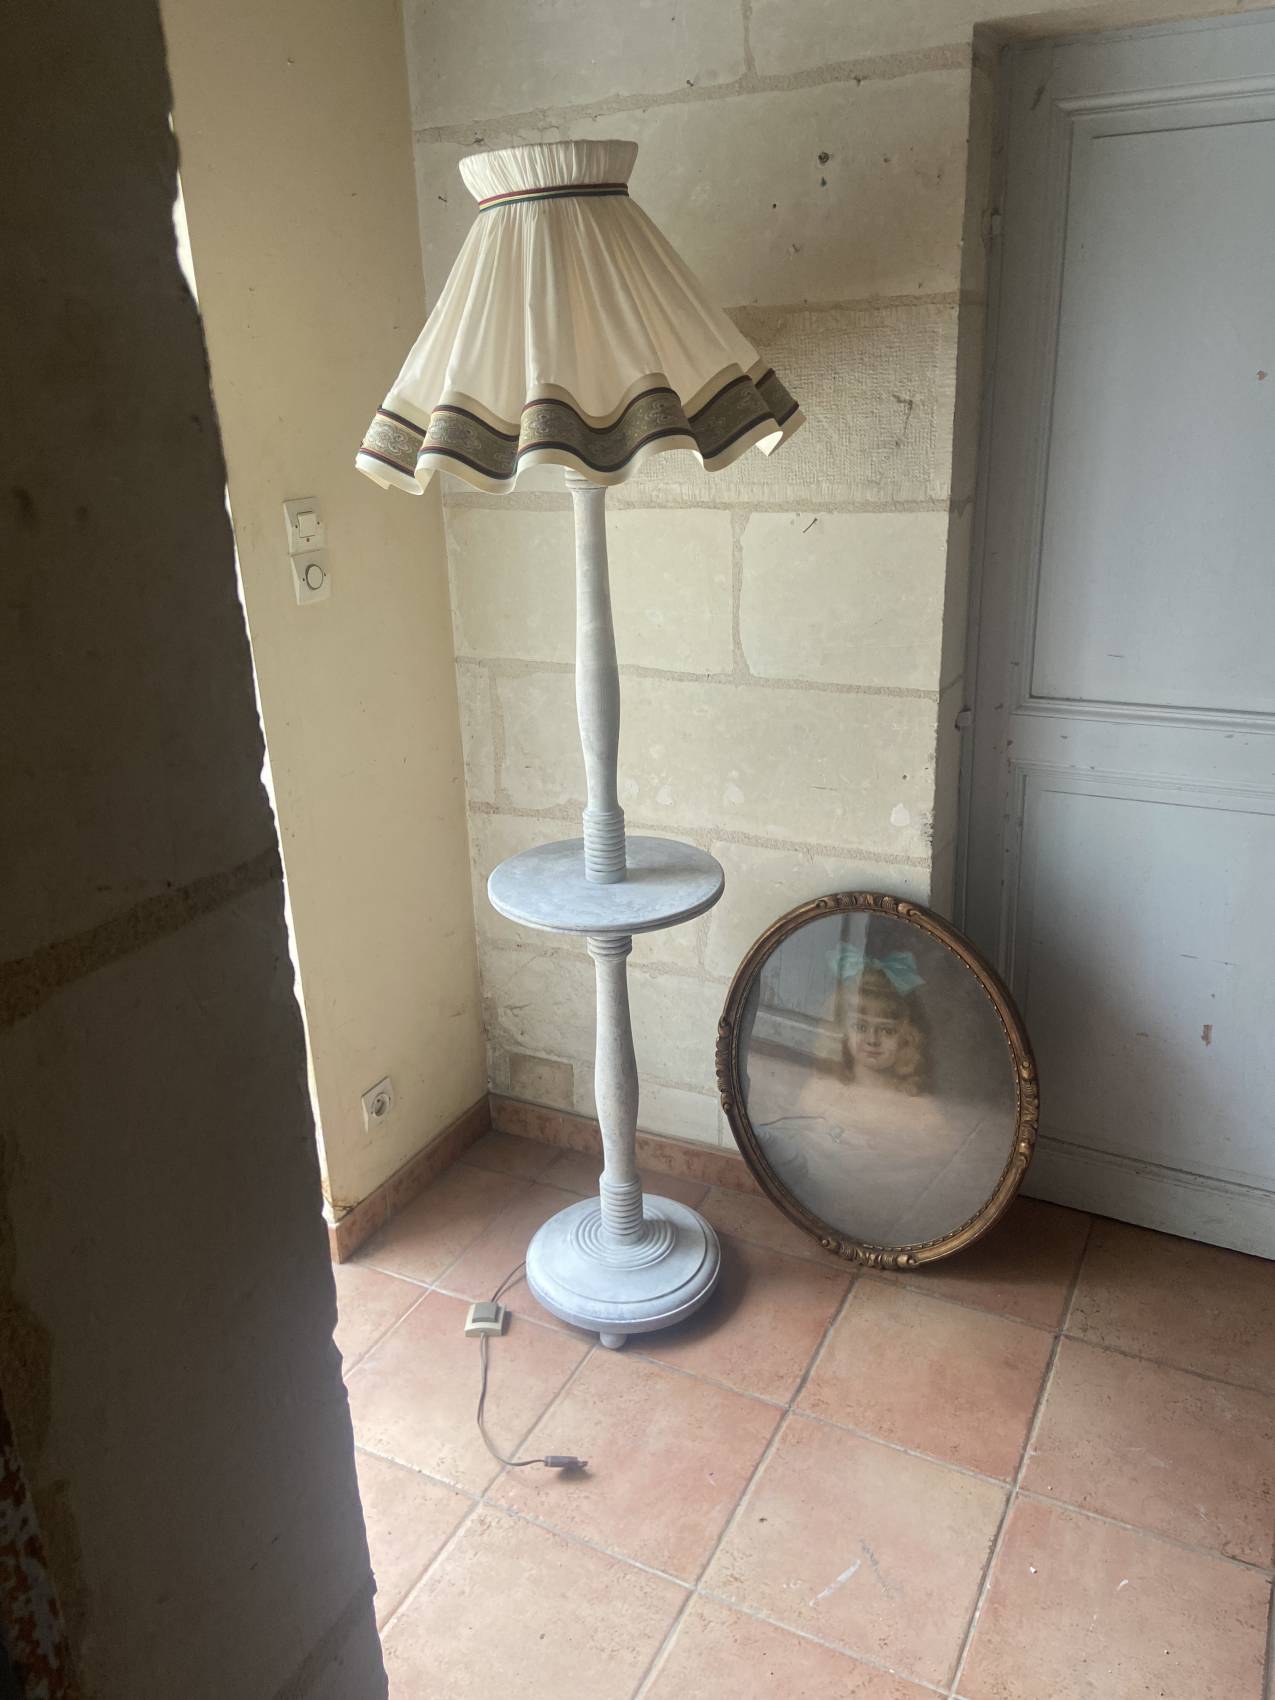 Grand lampadaire ancien rénové entièrement0 - La Brocante Bucolique